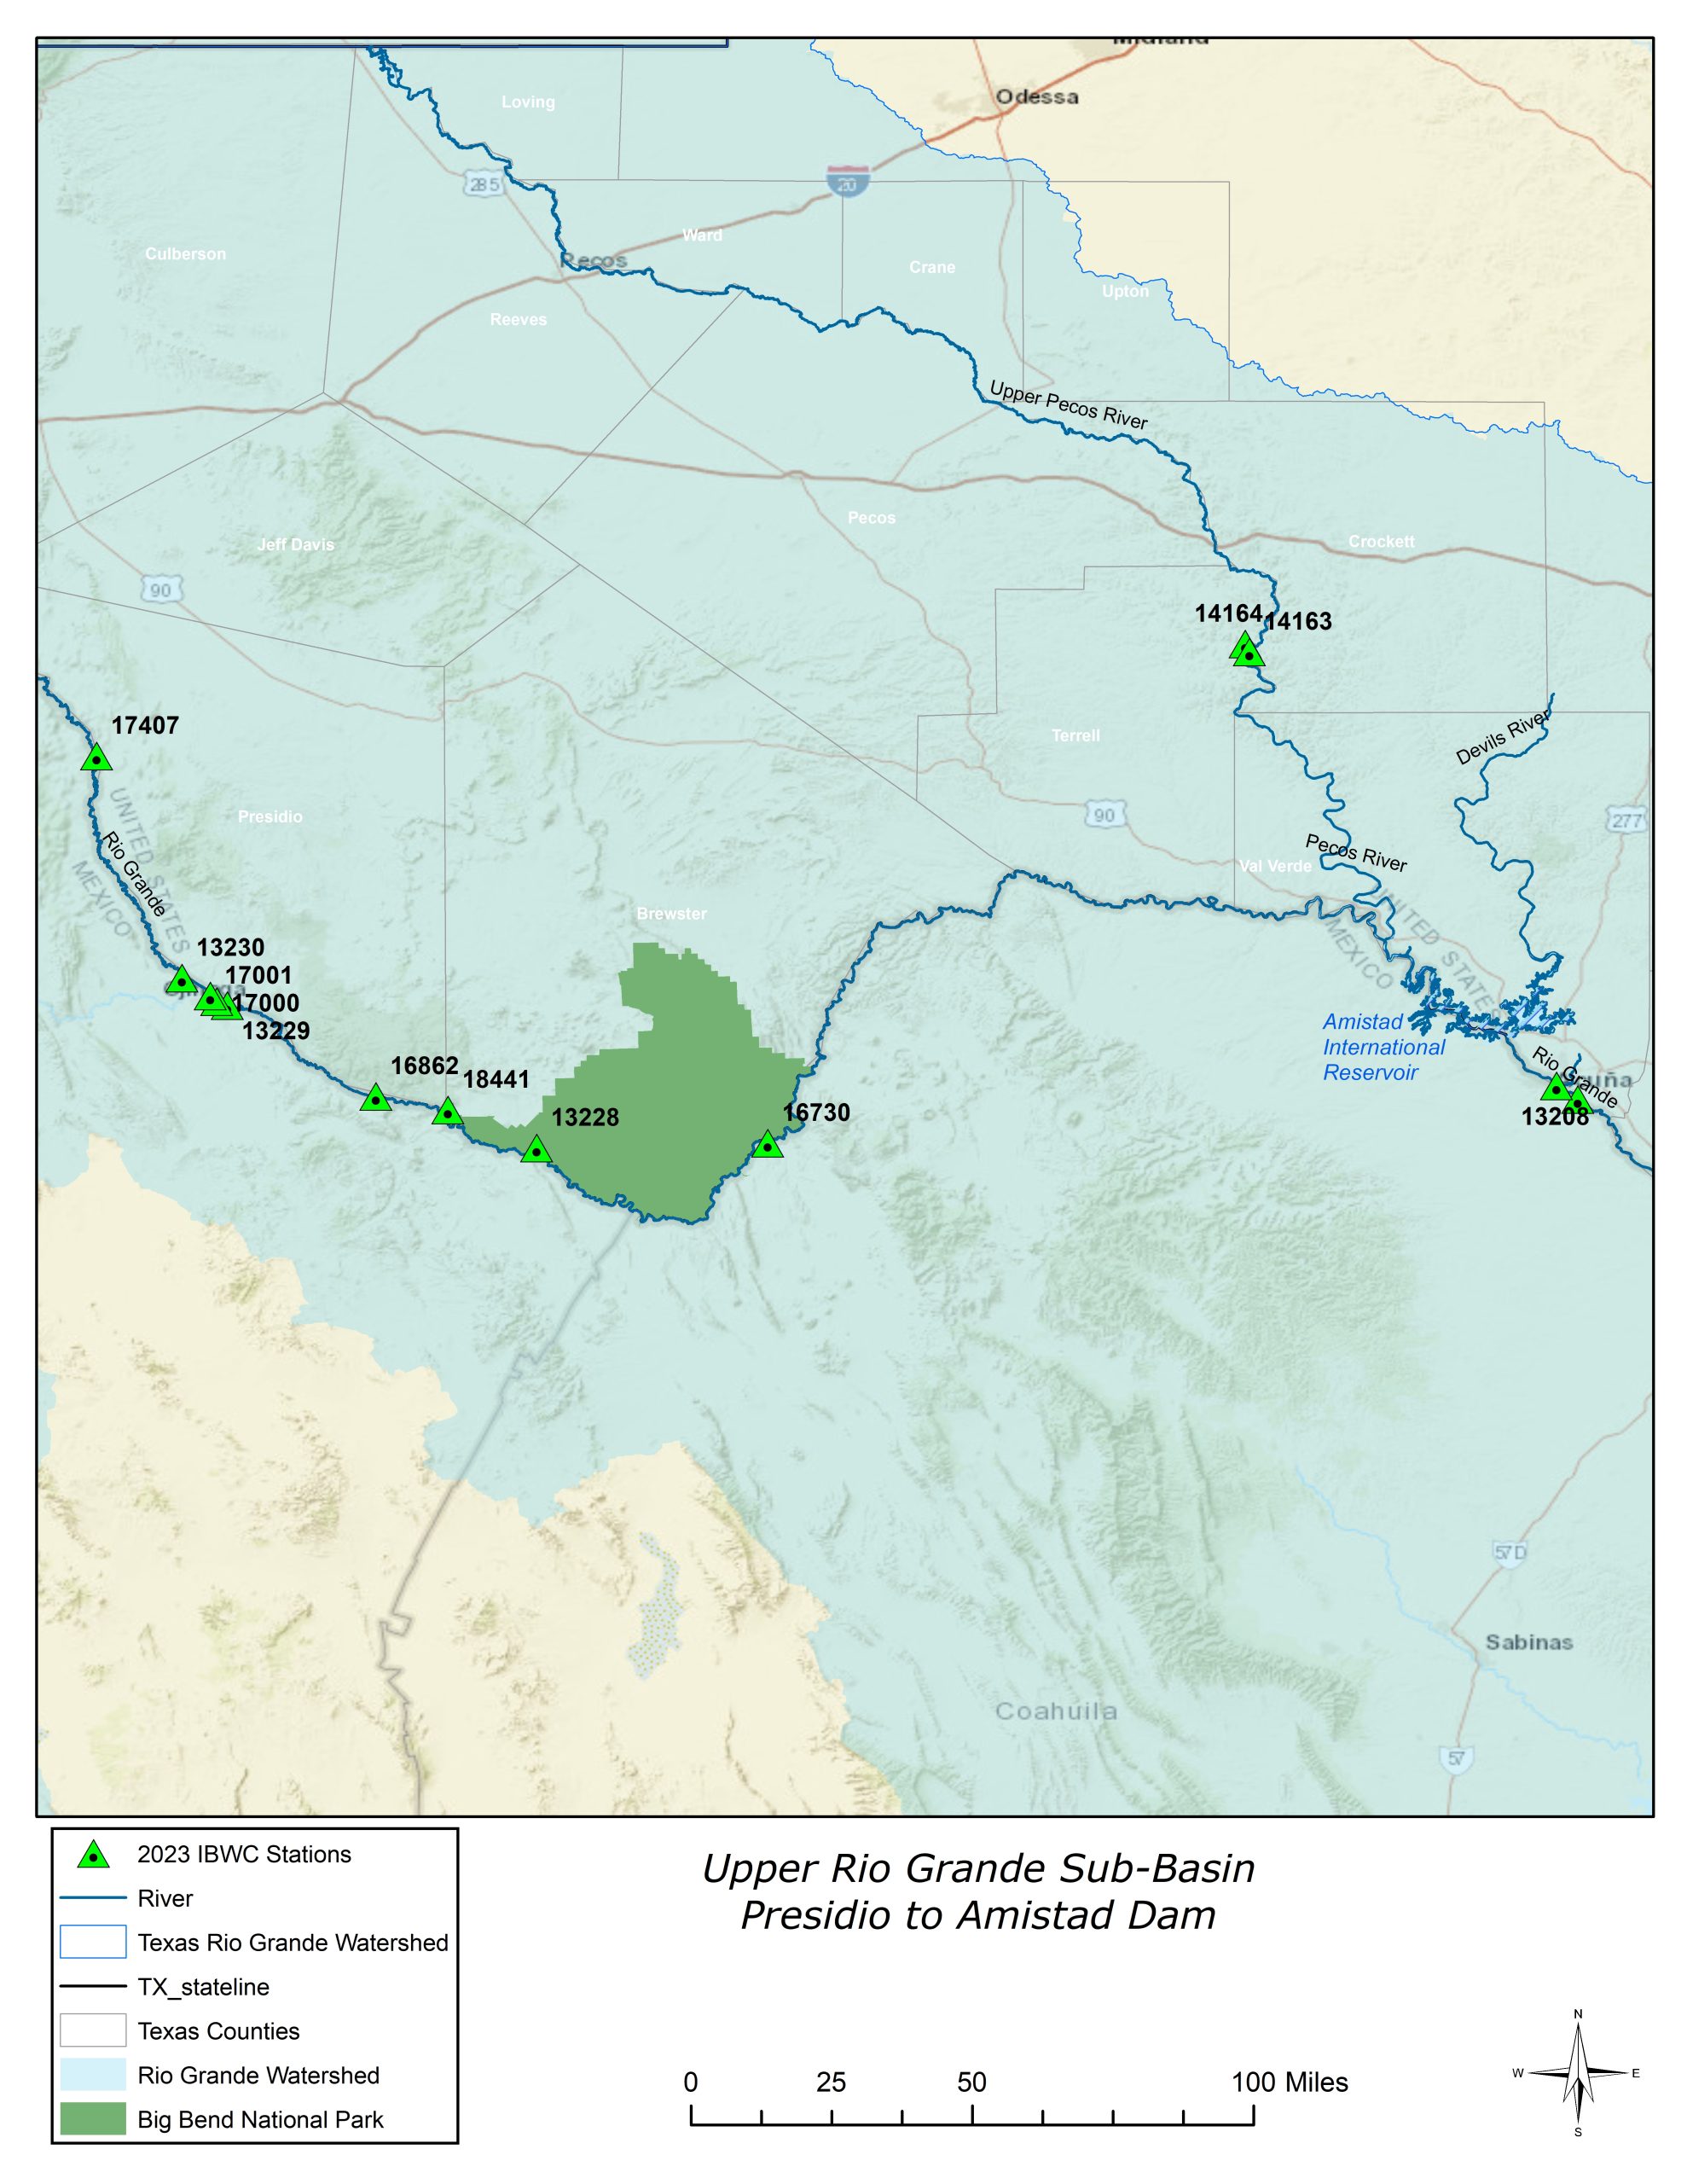 Upper Rio Grande Sub-Basin - Presidio to Amistad Dam